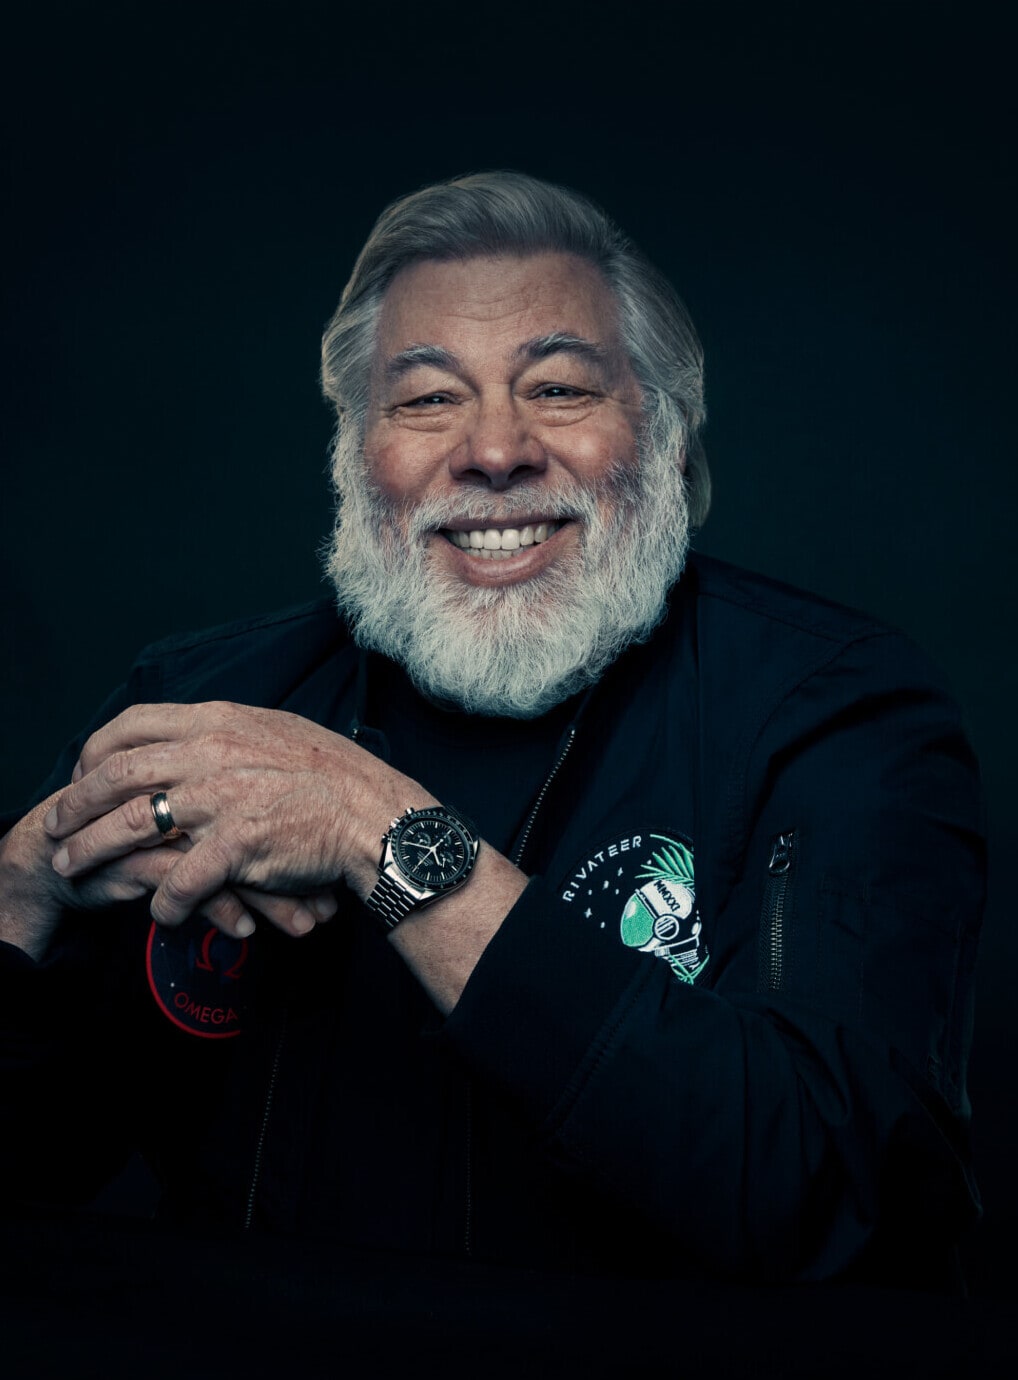 PRESIDENT Steve Wozniak